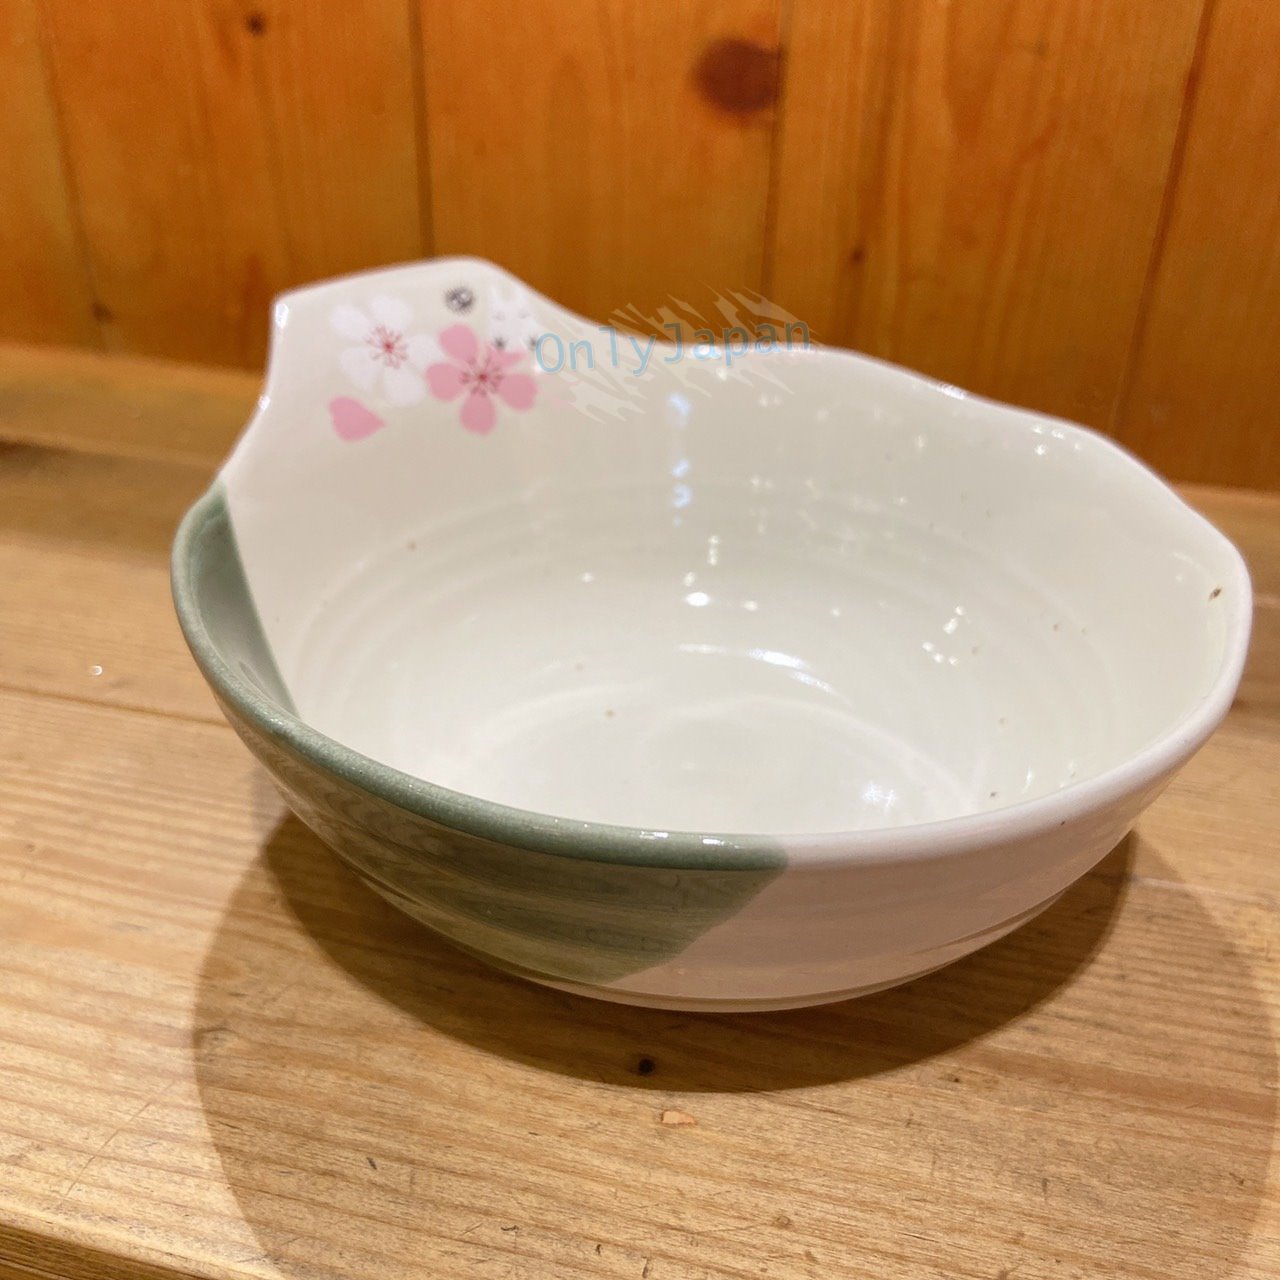 真愛日本 宮崎駿 吉卜力 陶瓷湯碗 吞水湯碗 龍貓和風櫻花綠 湯碗 小碗 小缽 碗 缽 龍貓 碗 陶瓷小缽 甜點碗